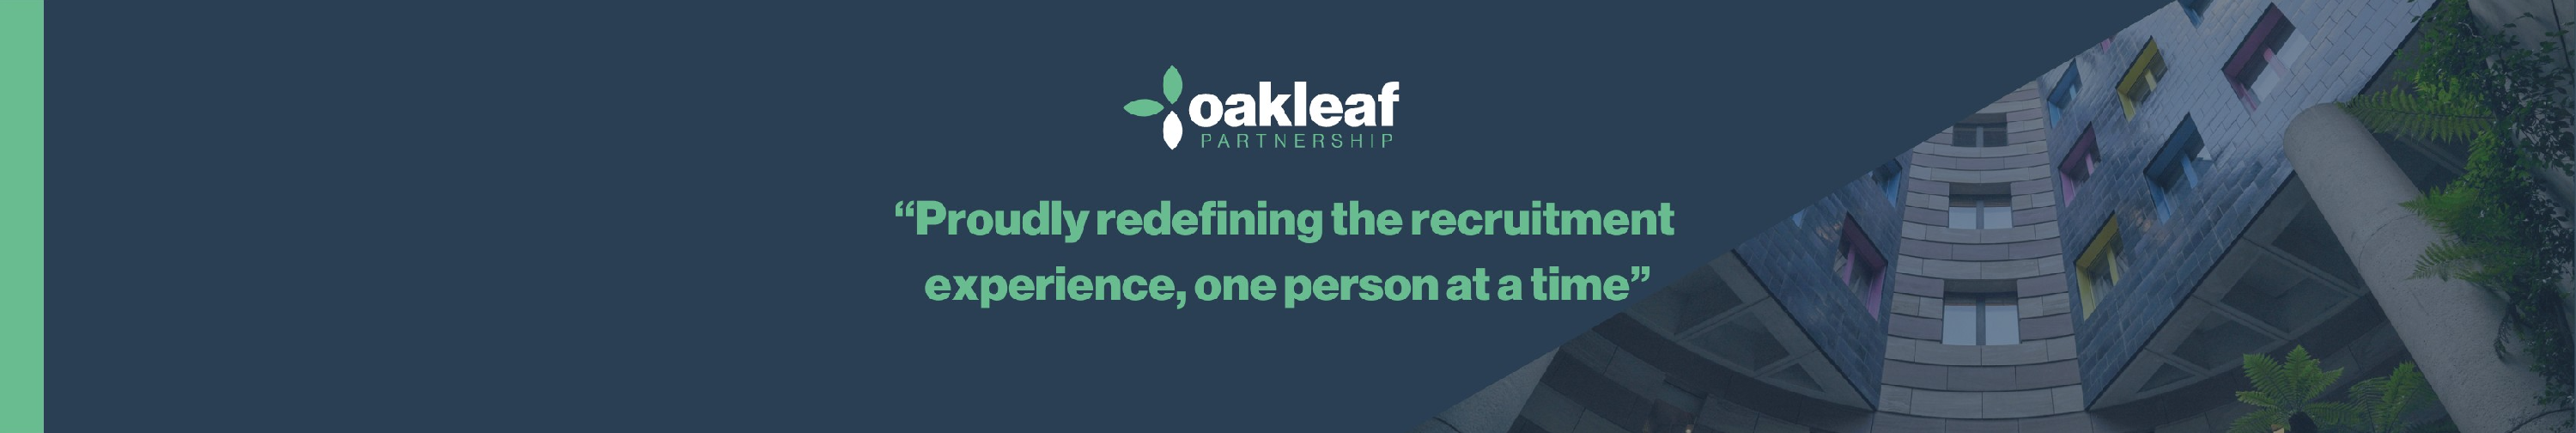 Oakleaf Partnership background